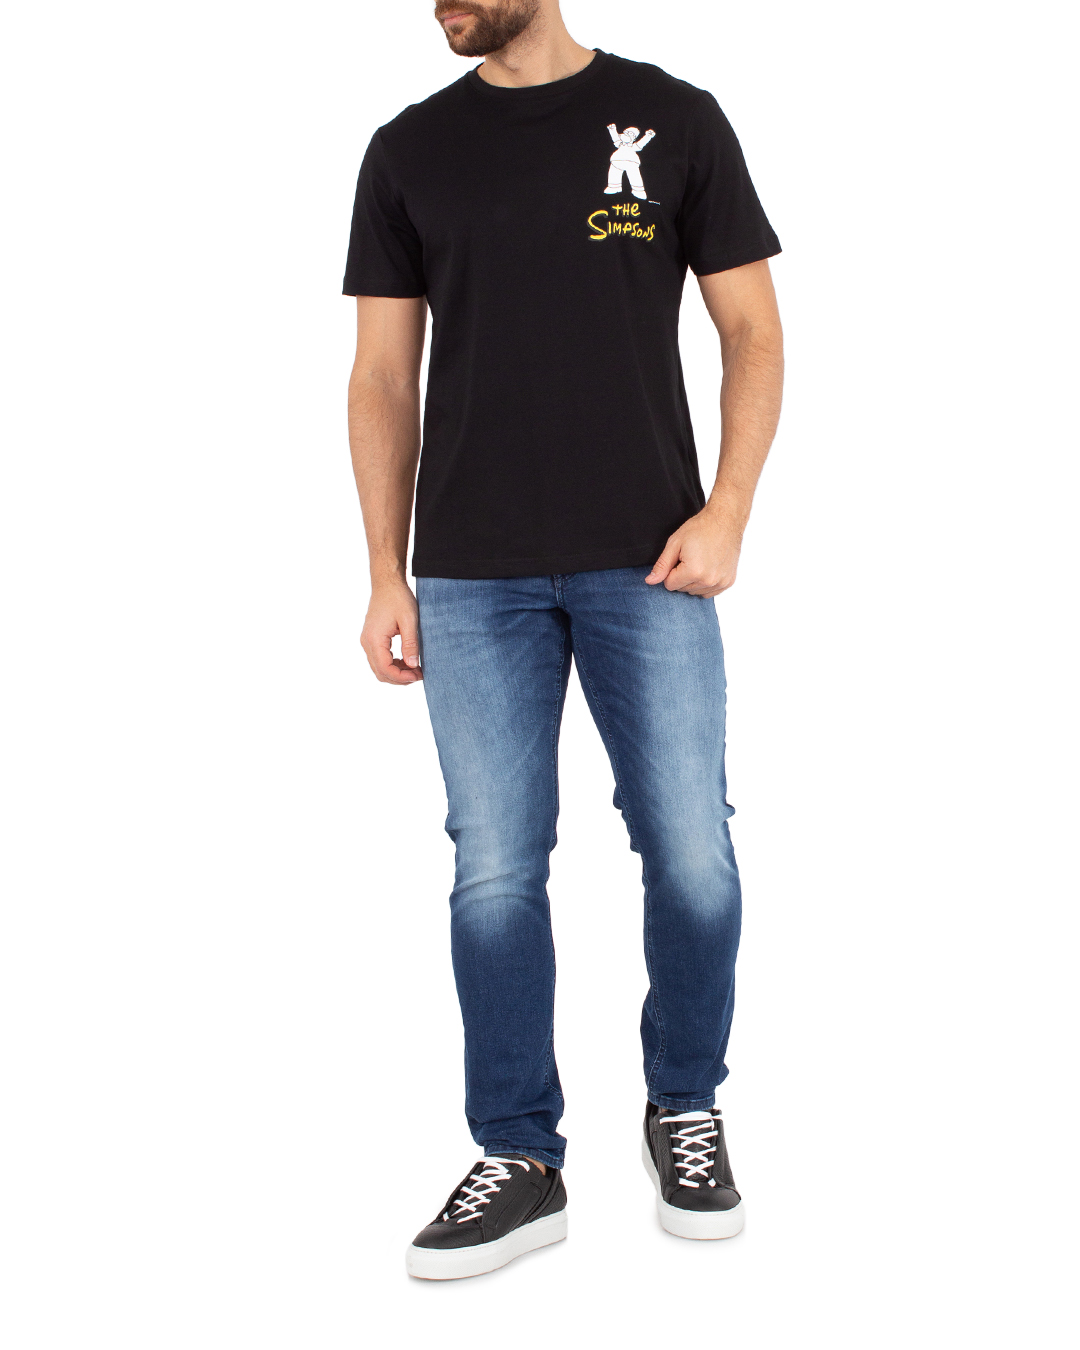 футболка Antony Morato MMKS02415-FA100240 черный+принт xl, размер xl, цвет черный+принт MMKS02415-FA100240 черный+принт xl - фото 2